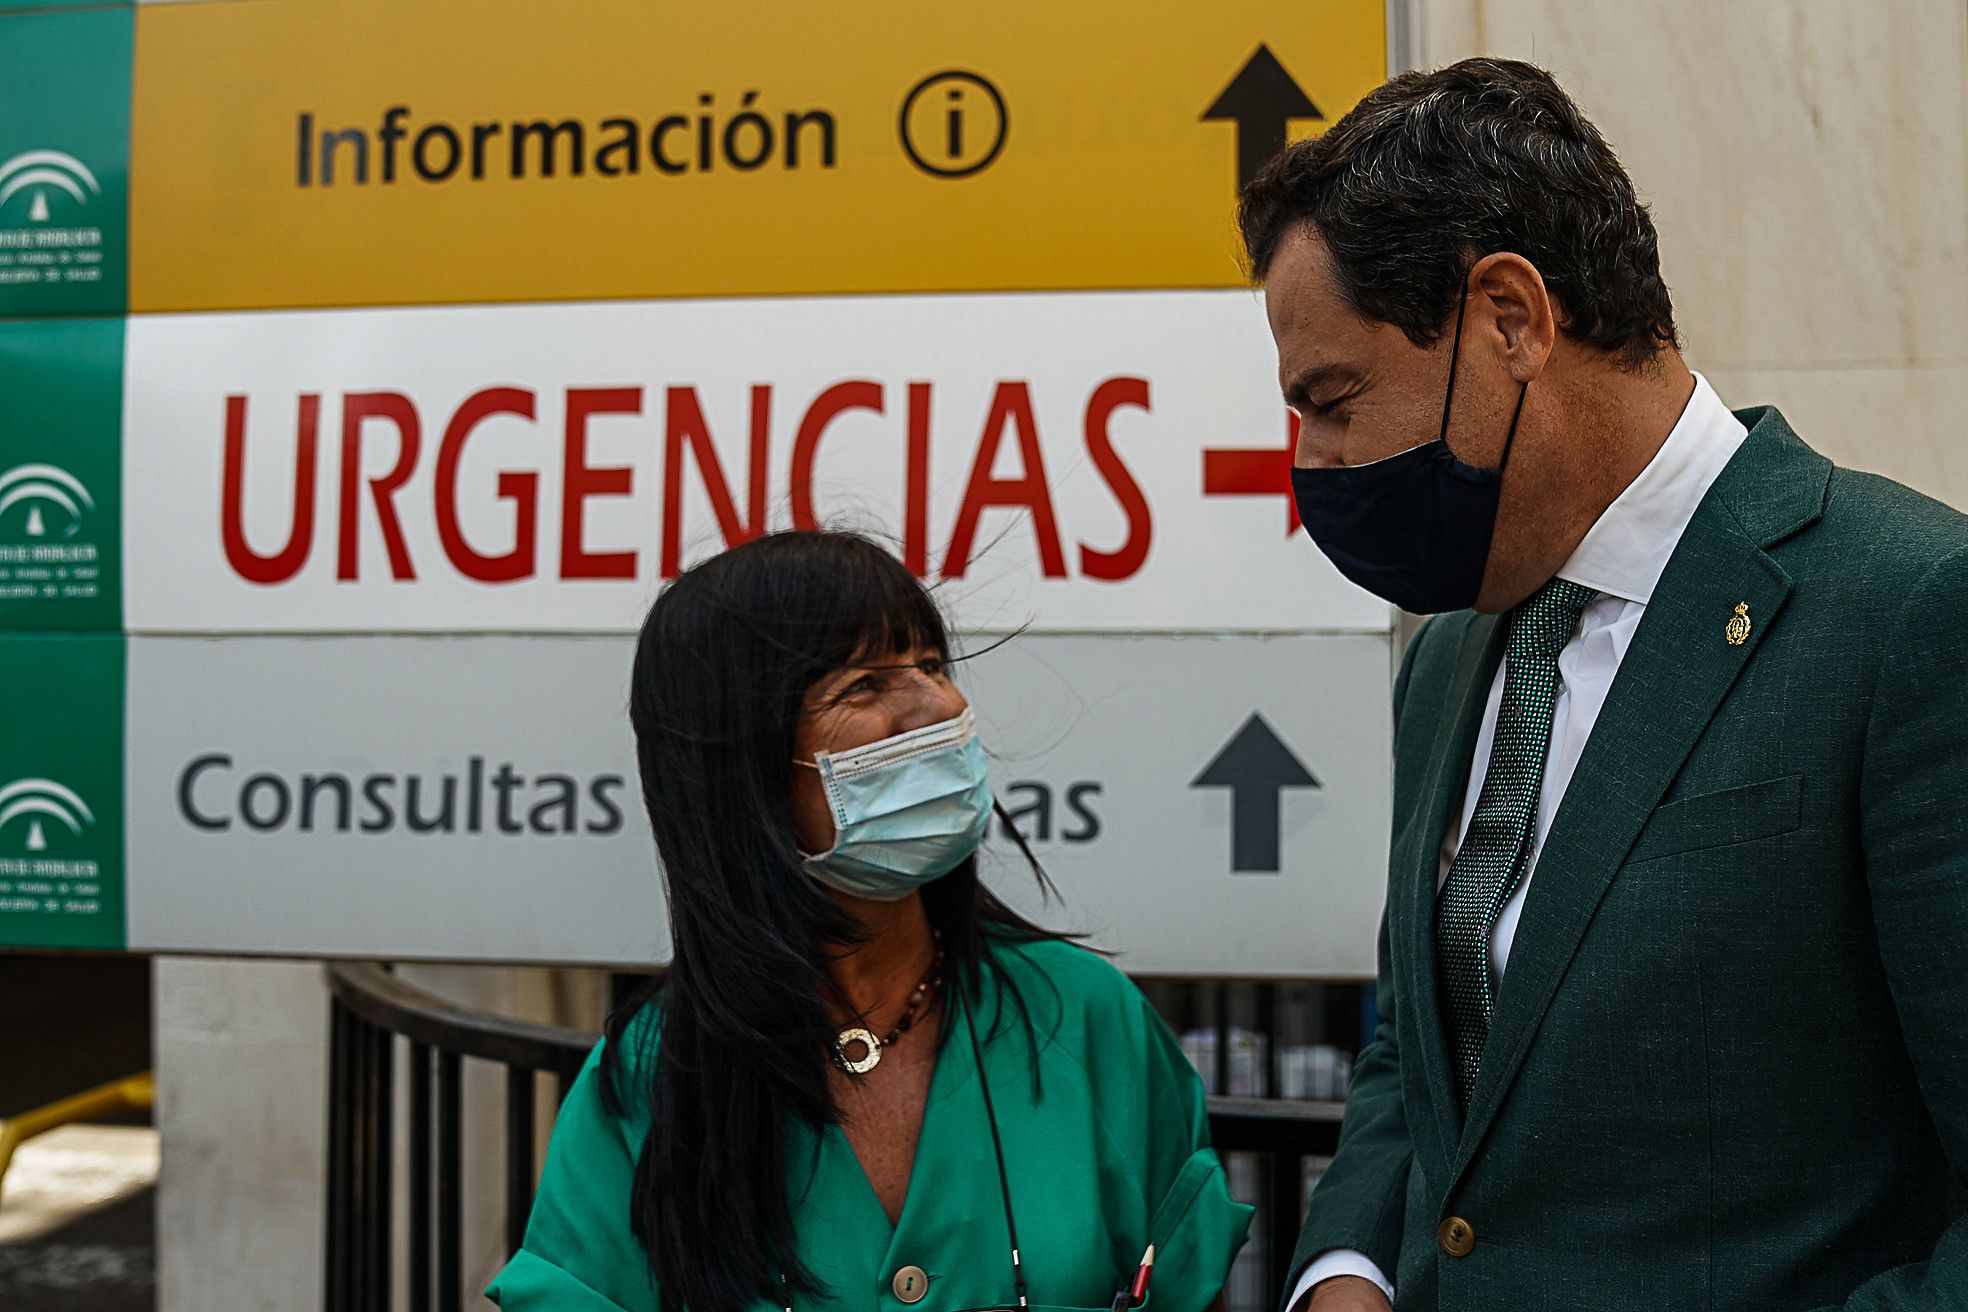 Moreno Bonilla, en una imagen de archivo en un hospital andaluz, conversa con un profesional del SAS.